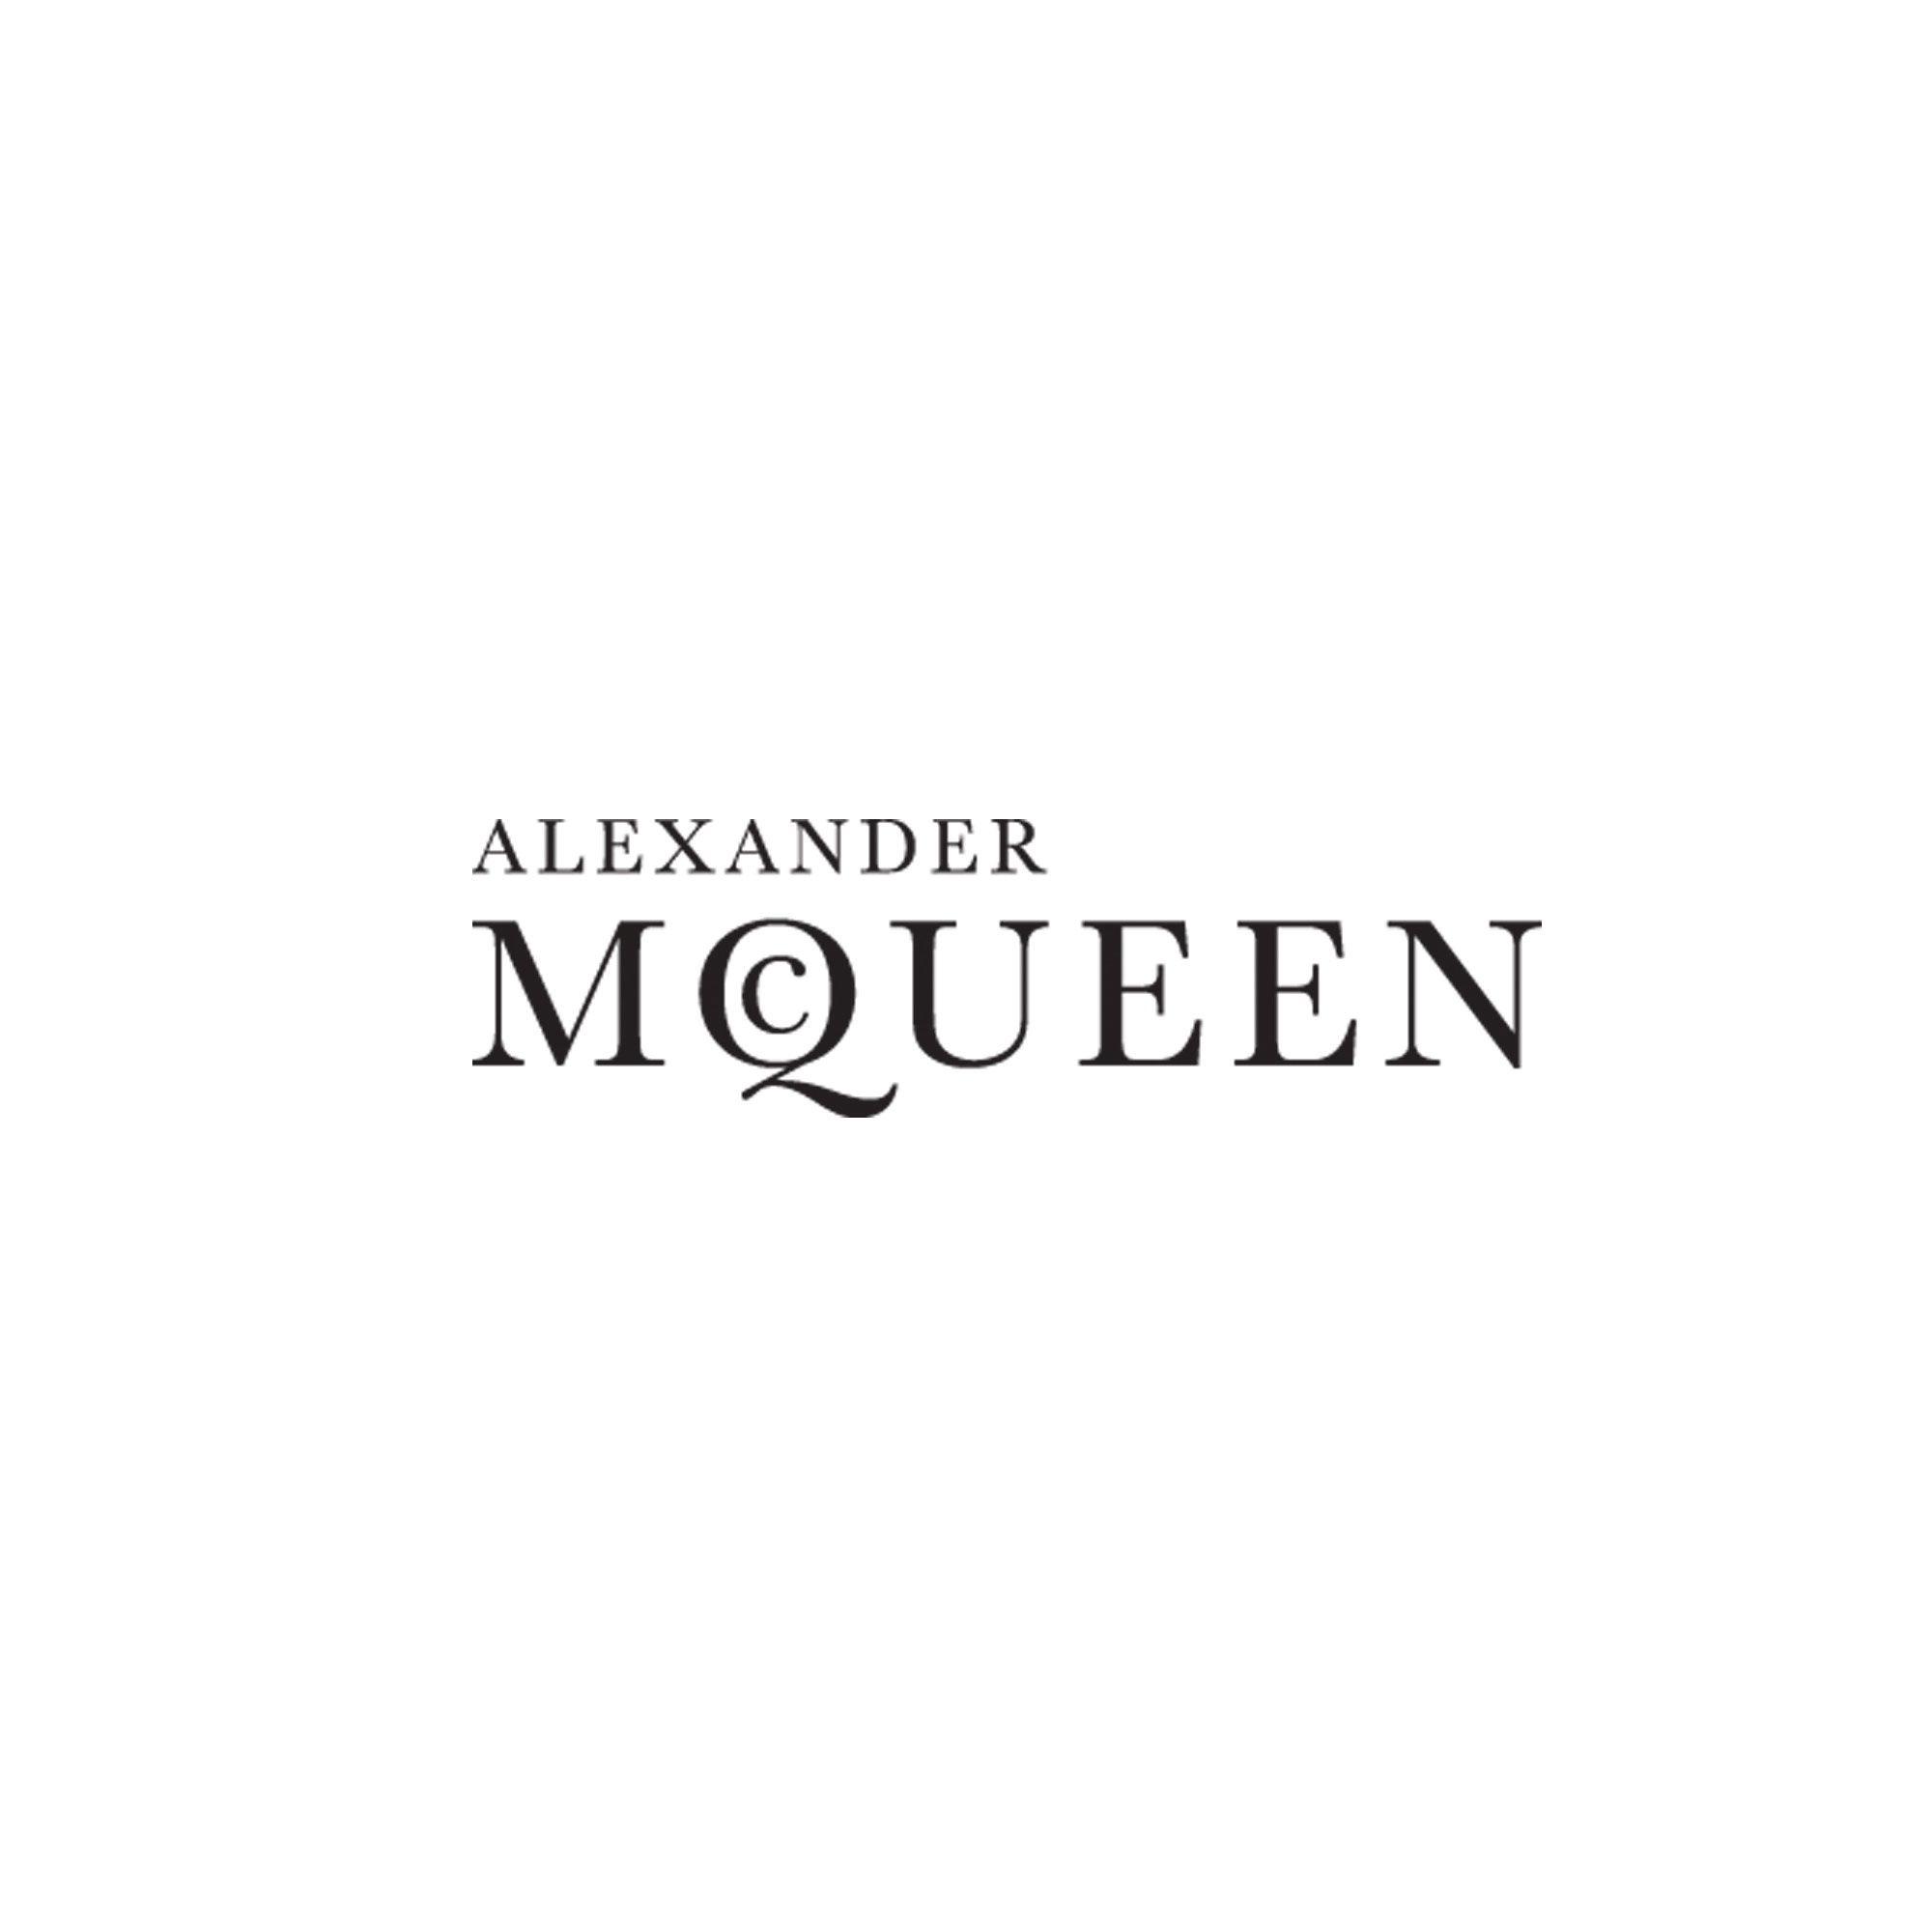 Alexander McQueen Logo - Alexander mcqueen Logos